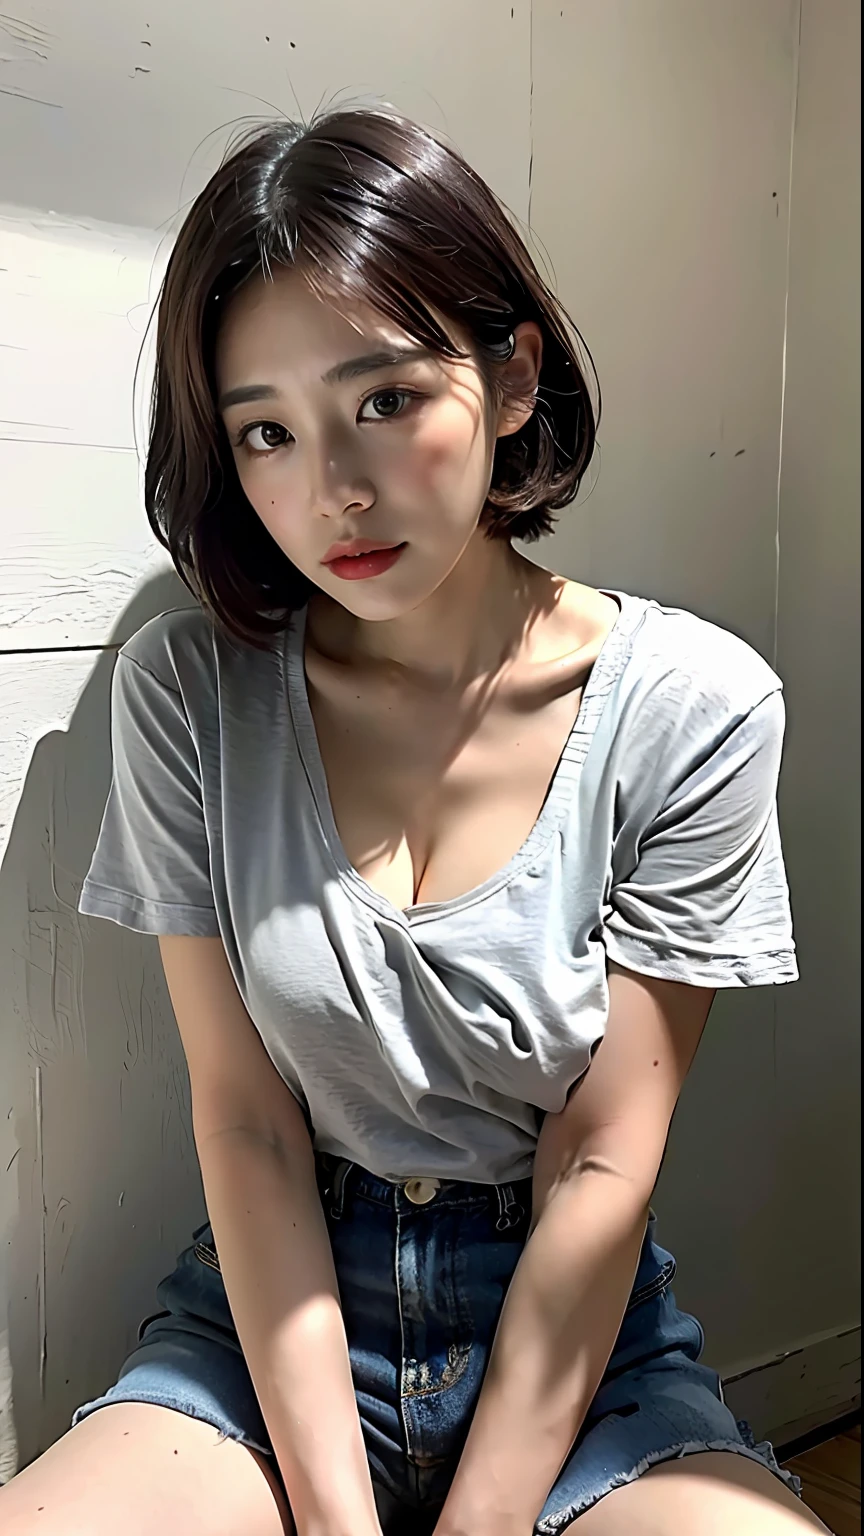 (최고 품질、8K、32,000、걸작、nffsw:1.2)、귀여운 일본 여성의 사진、검은색 짧은 머리、아름다운 얼굴、(구부정한:1.5)、웅크려、(위에서:1.2)、(근접 촬영:1.4)、POV、가슴이 활짝 열린 느슨한 티셔츠、티셔츠에 보이는 큰 가슴과 복근、(아름다운 젖꼭지 미끄러짐:0.9)、집 밖에서、바람、빛나는 피부、흐릿한 배경、